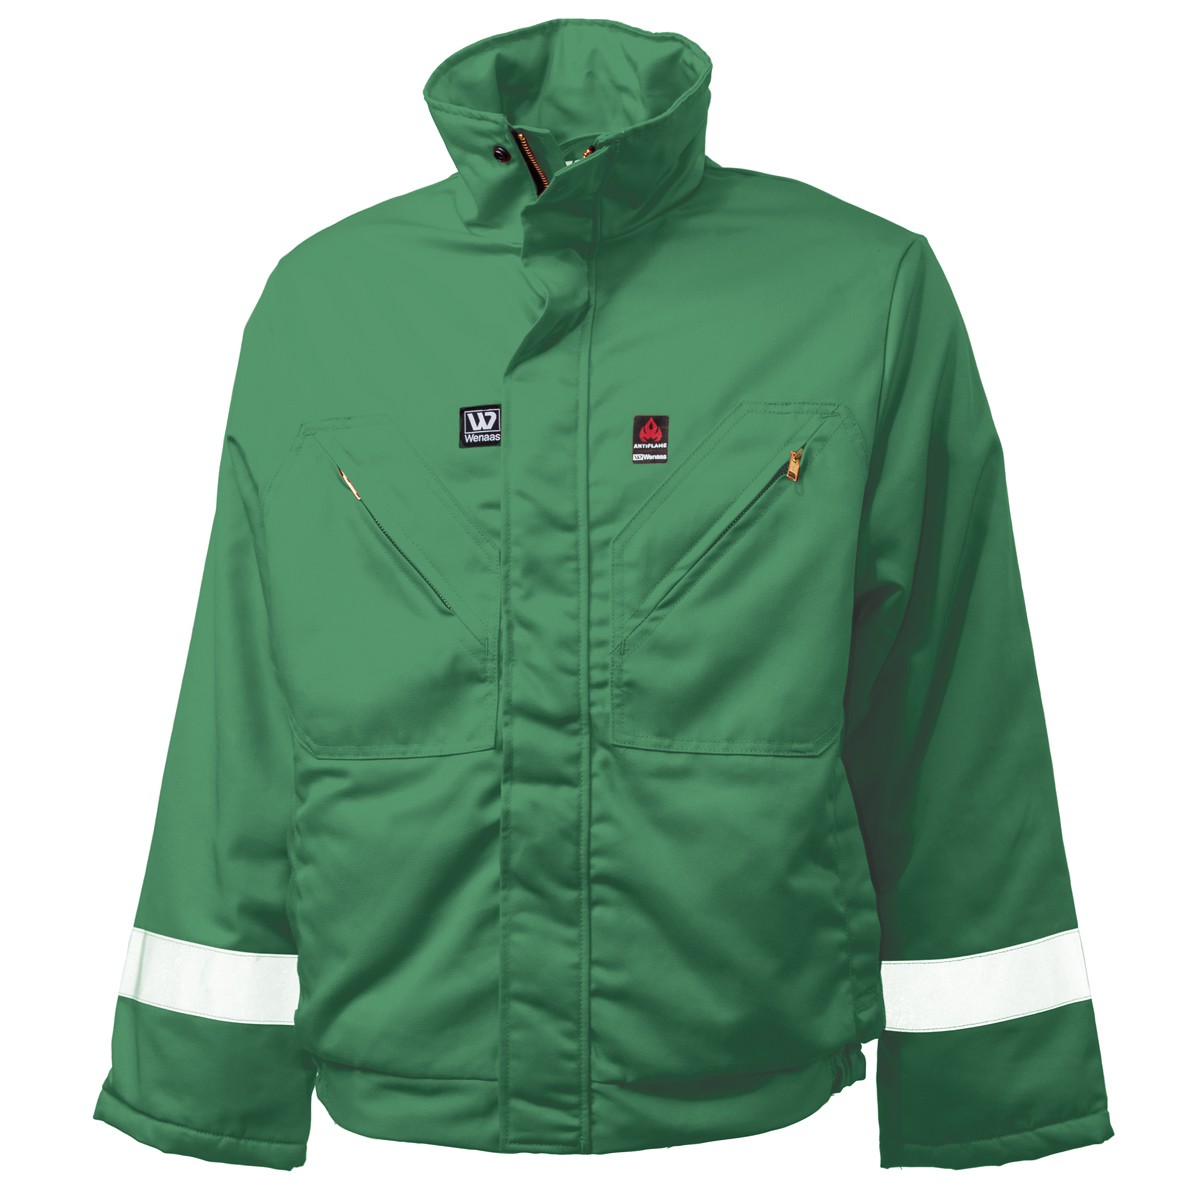 Flame Retardant Jacket - Green